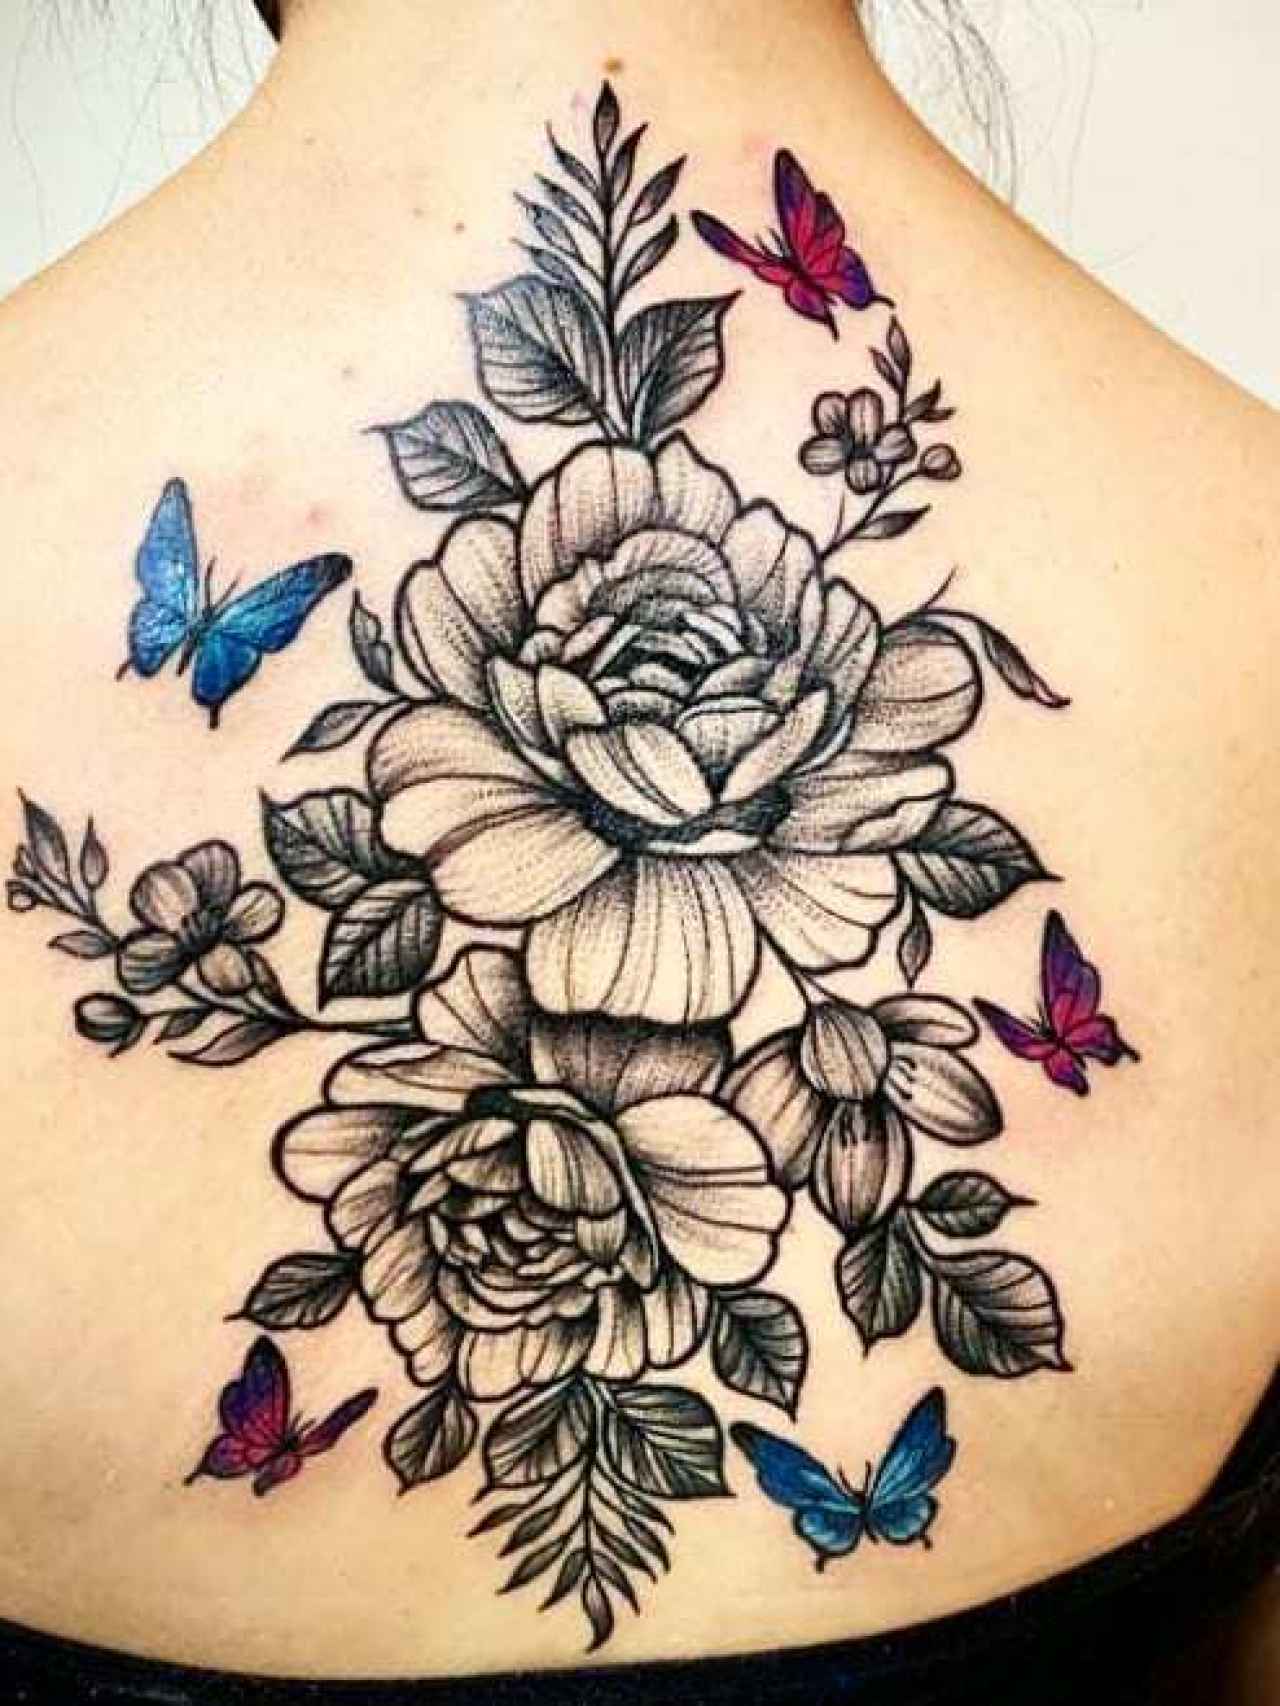 Espalda tatuada con motivos florales.